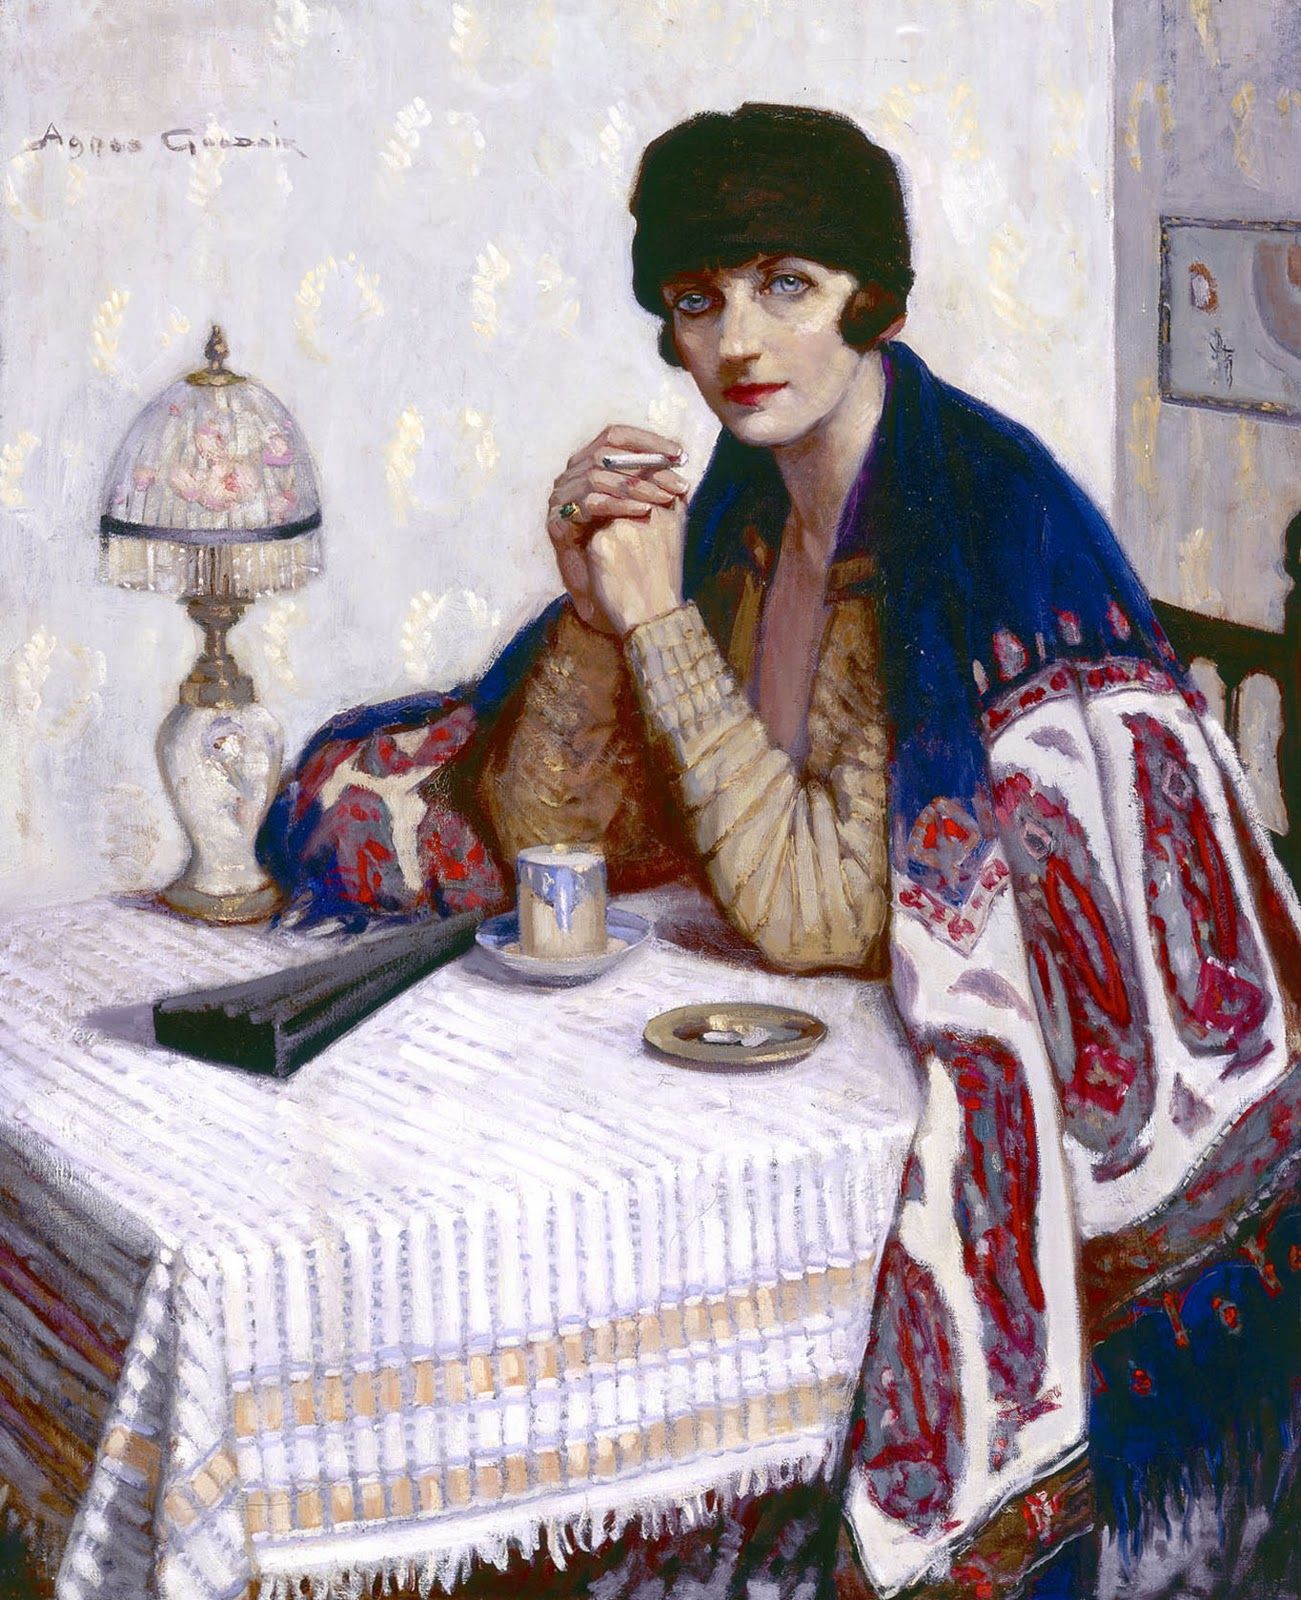 Ragazza con sigaretta by Agnes Goodsir - 1925 - 100 x 81 cm collezione privata